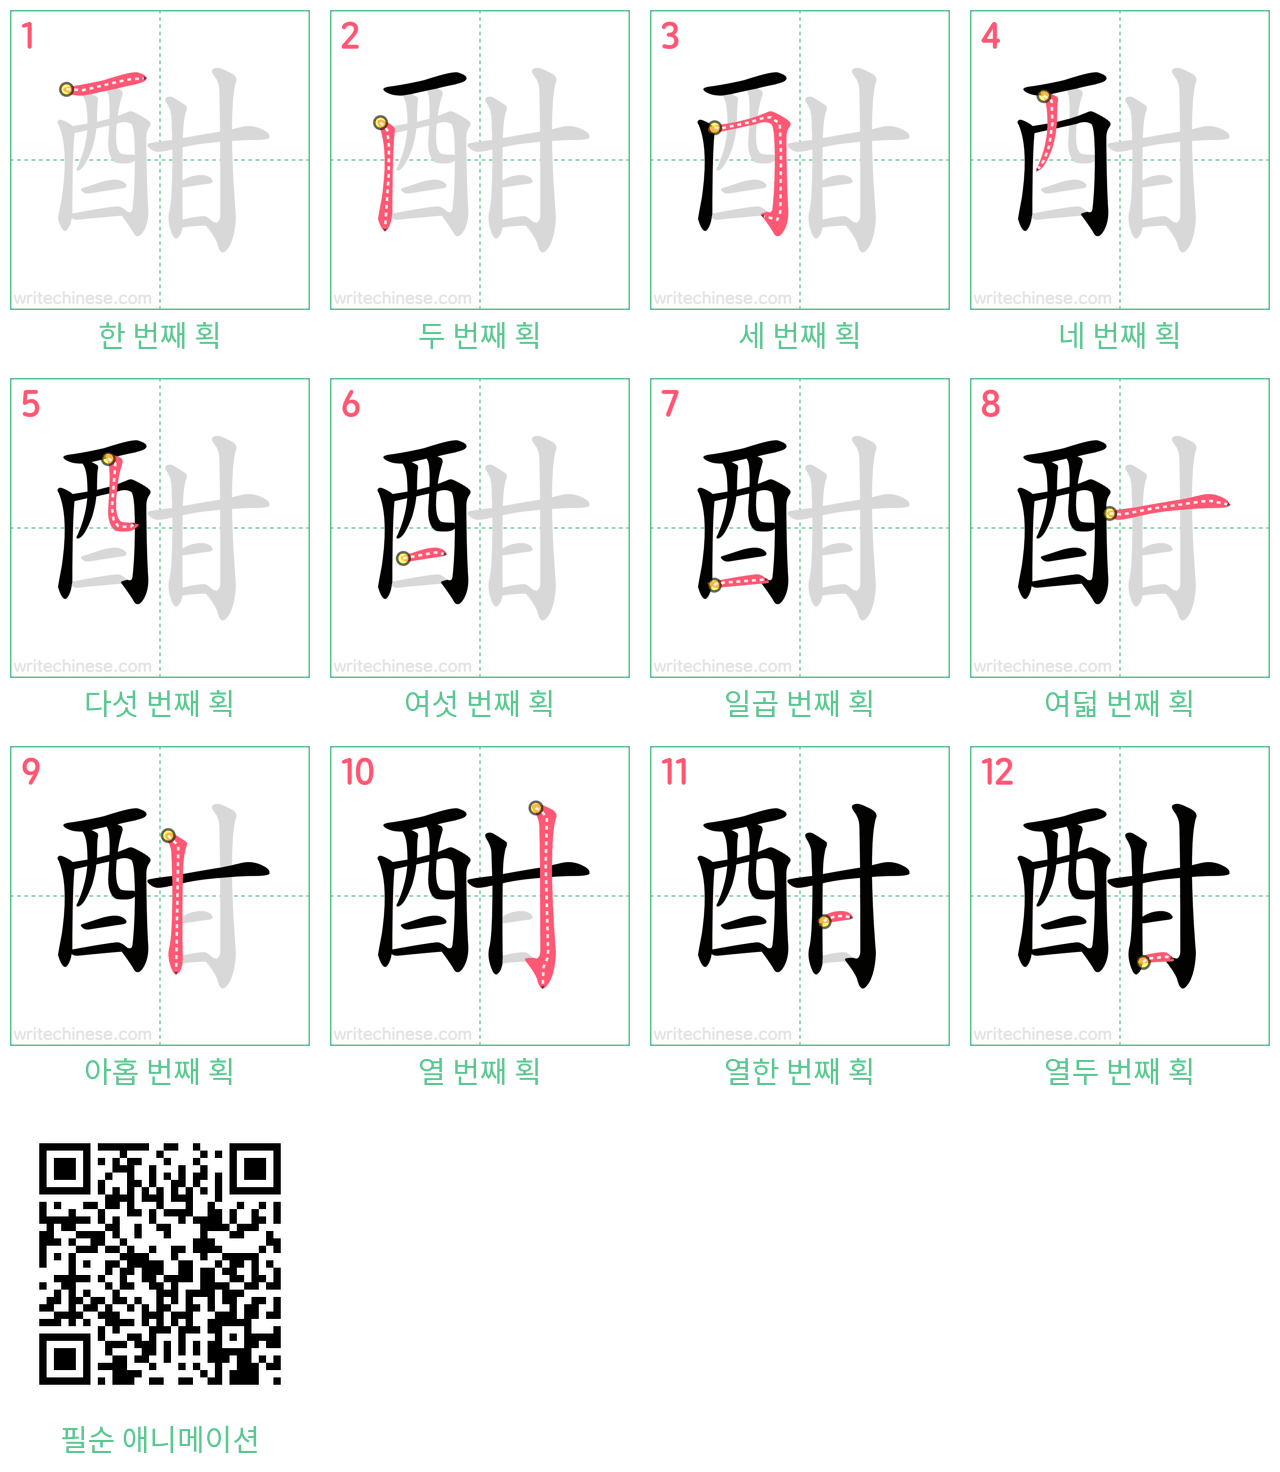 酣 step-by-step stroke order diagrams